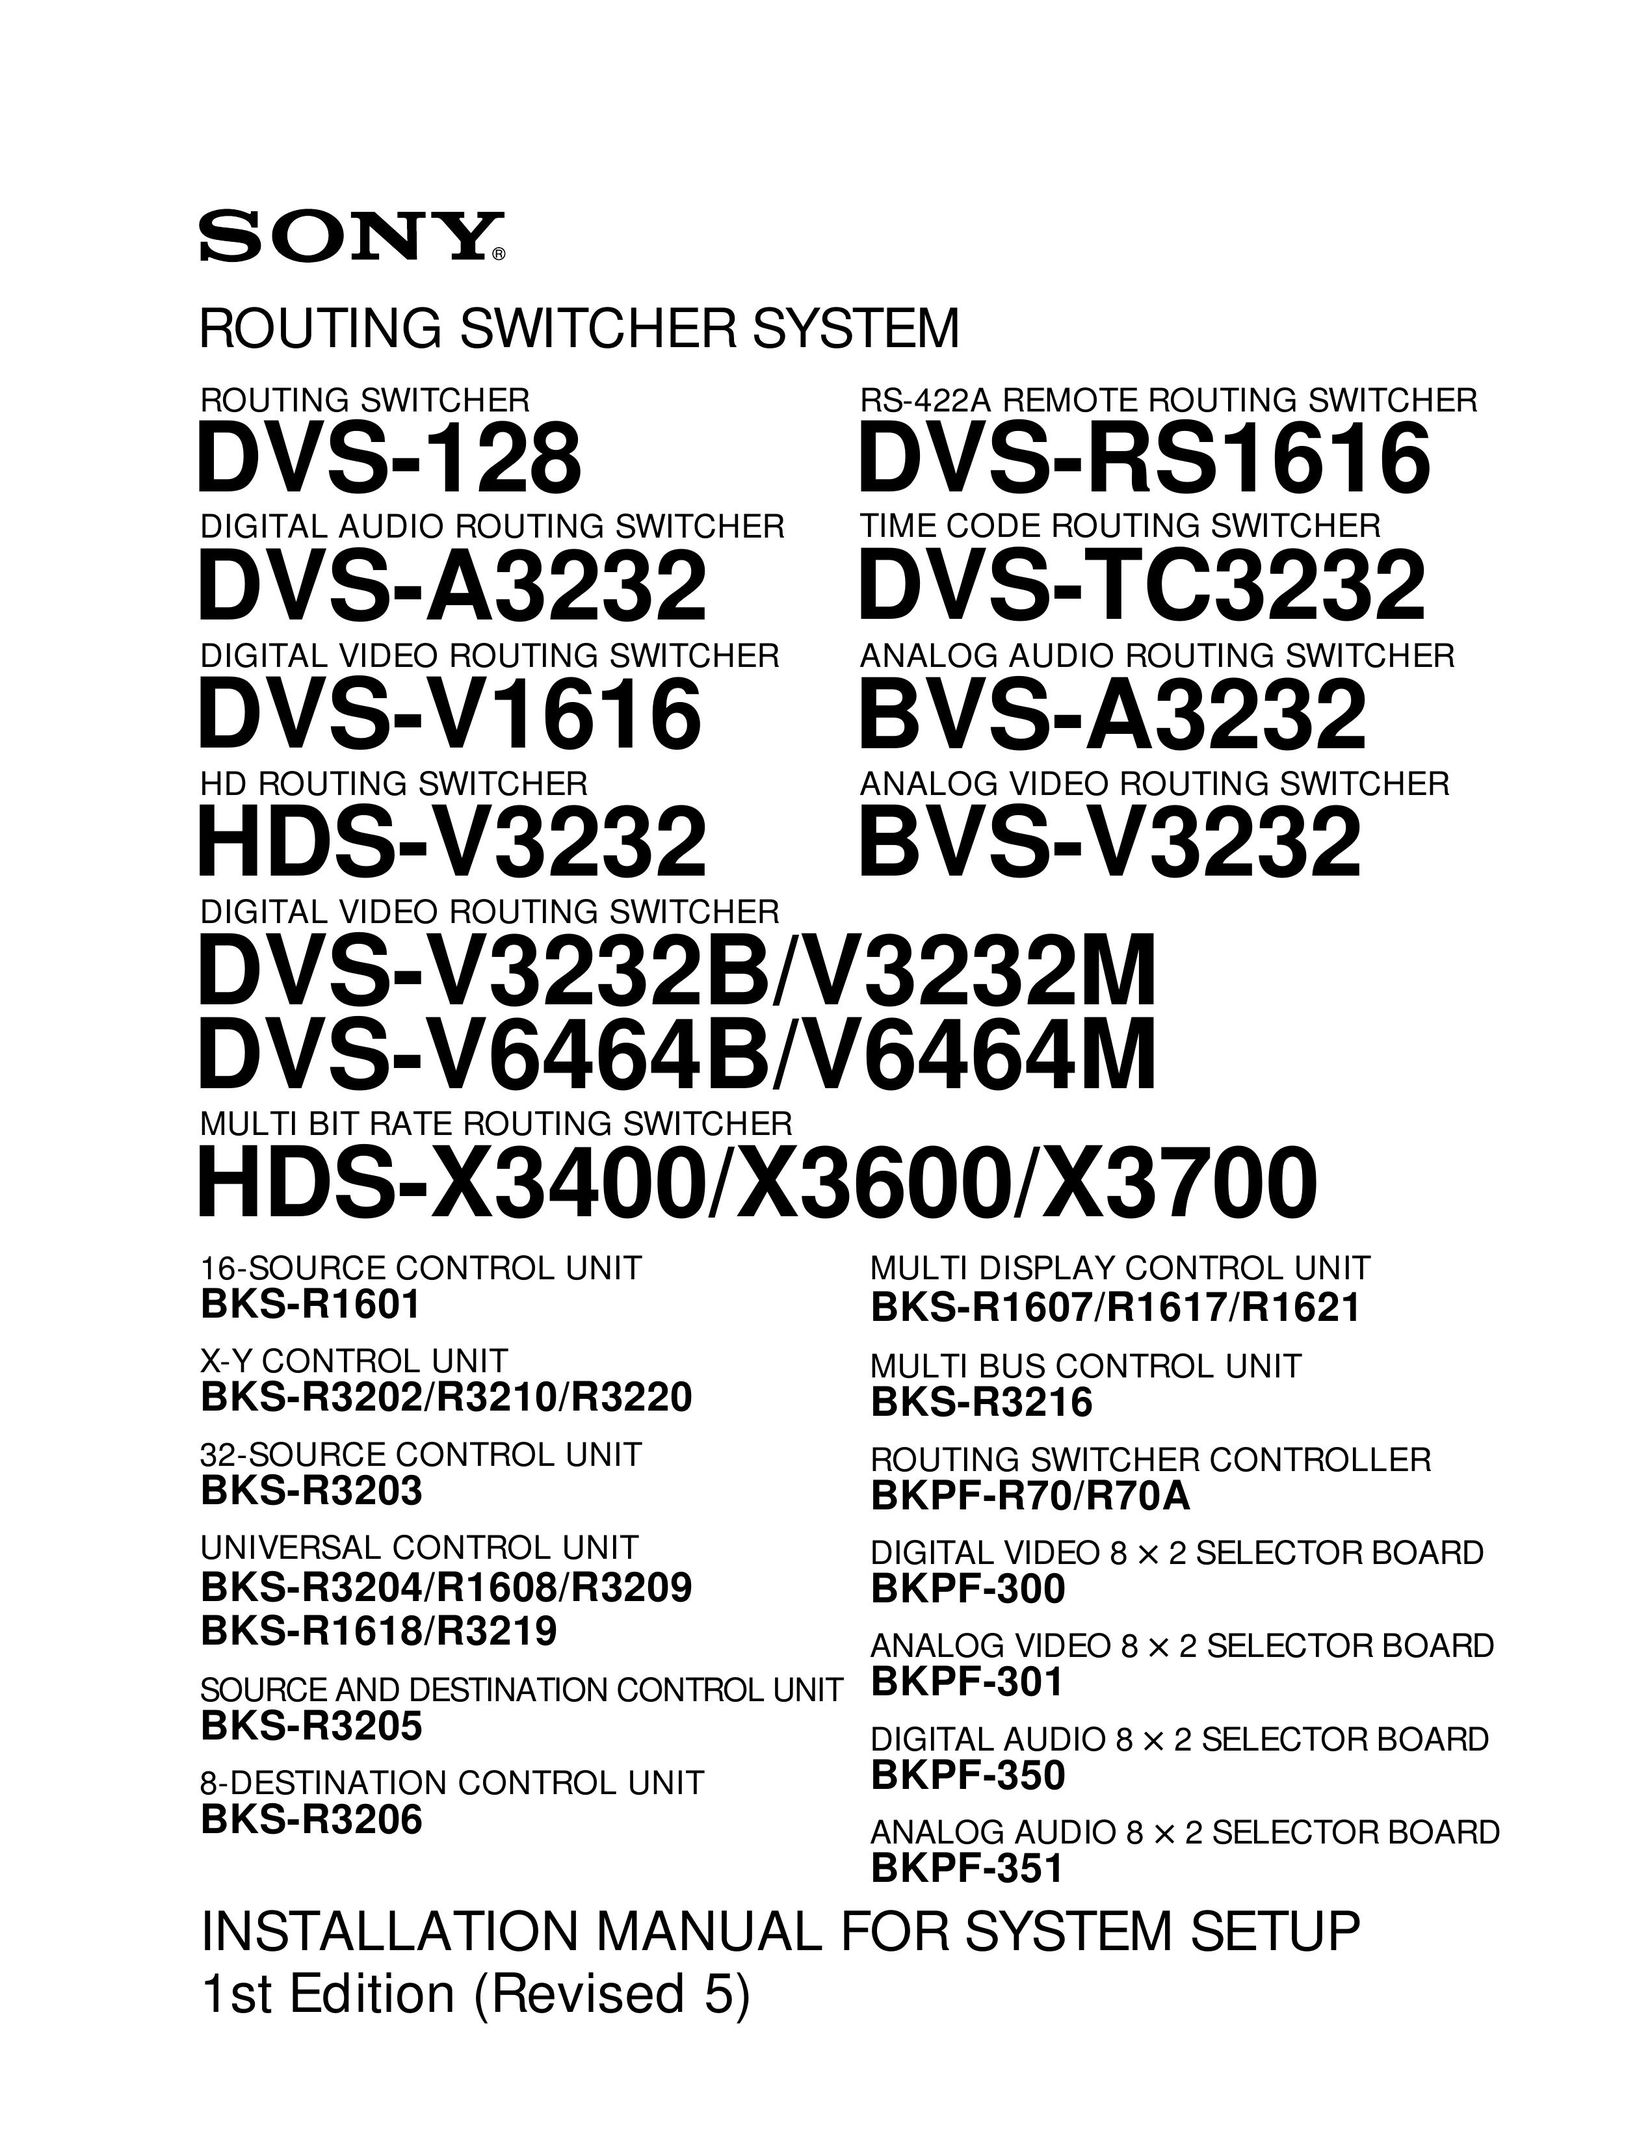 Sony BVS-V3232 Network Router User Manual